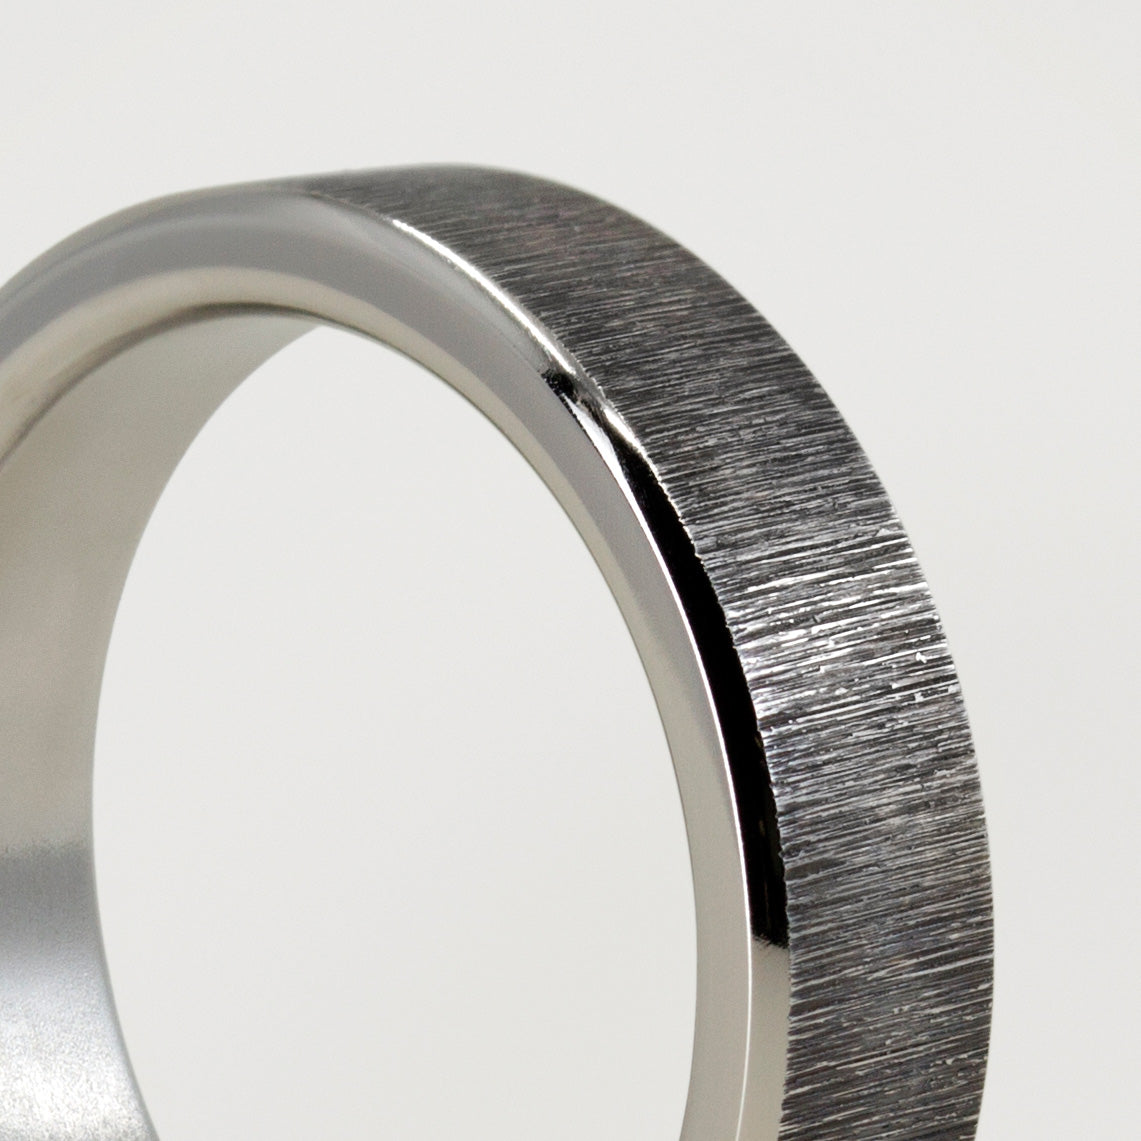 Darkened titanium ring